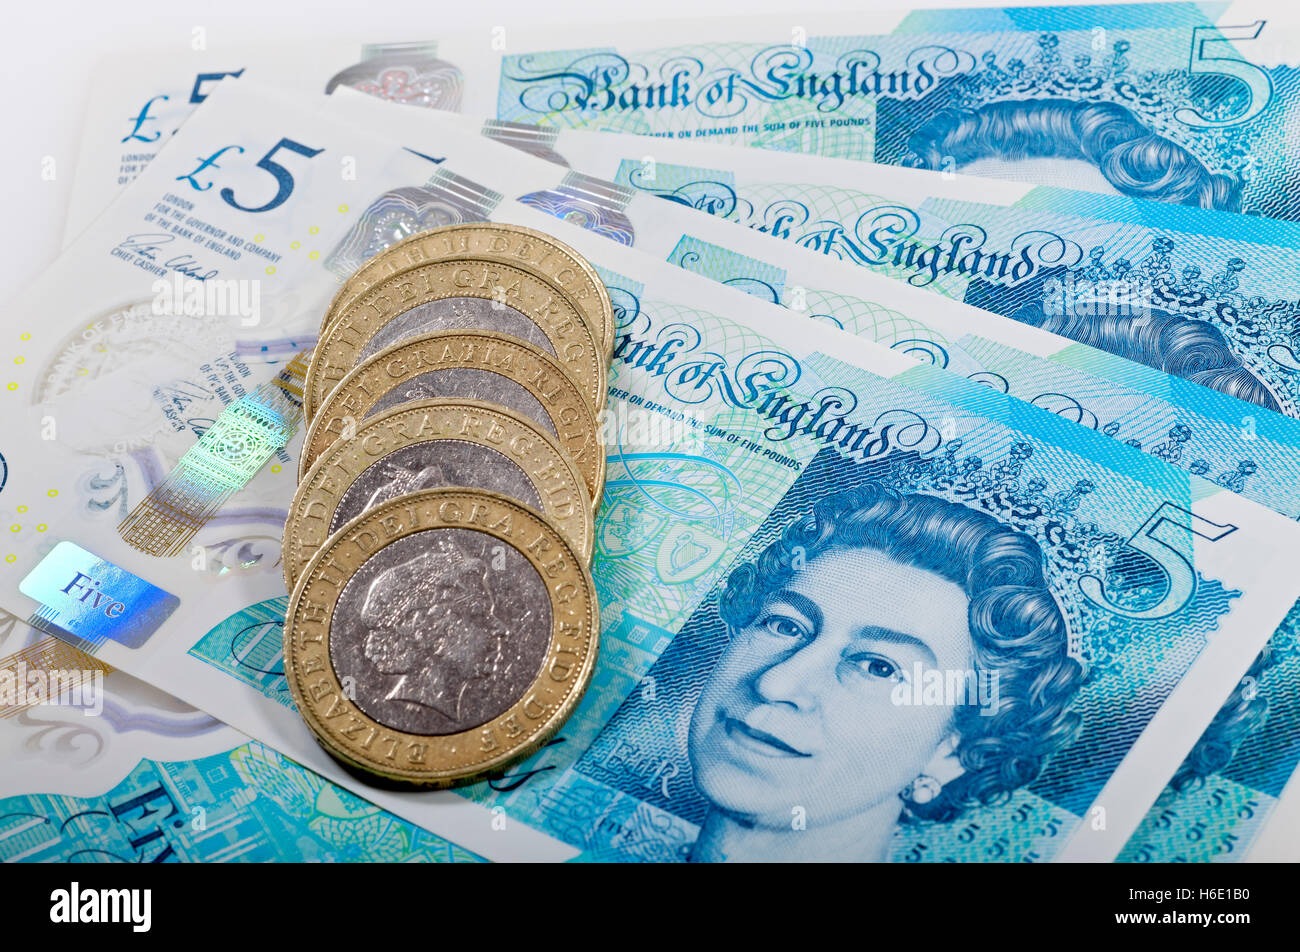 Nahaufnahme von Queen Elizabeth English Money £5 neue Polymer fünf Pfund Banknoten und zwei Pfund Münzen Barfinanzierung Konzept England Großbritannien Großbritannien Großbritannien Großbritannien Großbritannien Stockfoto